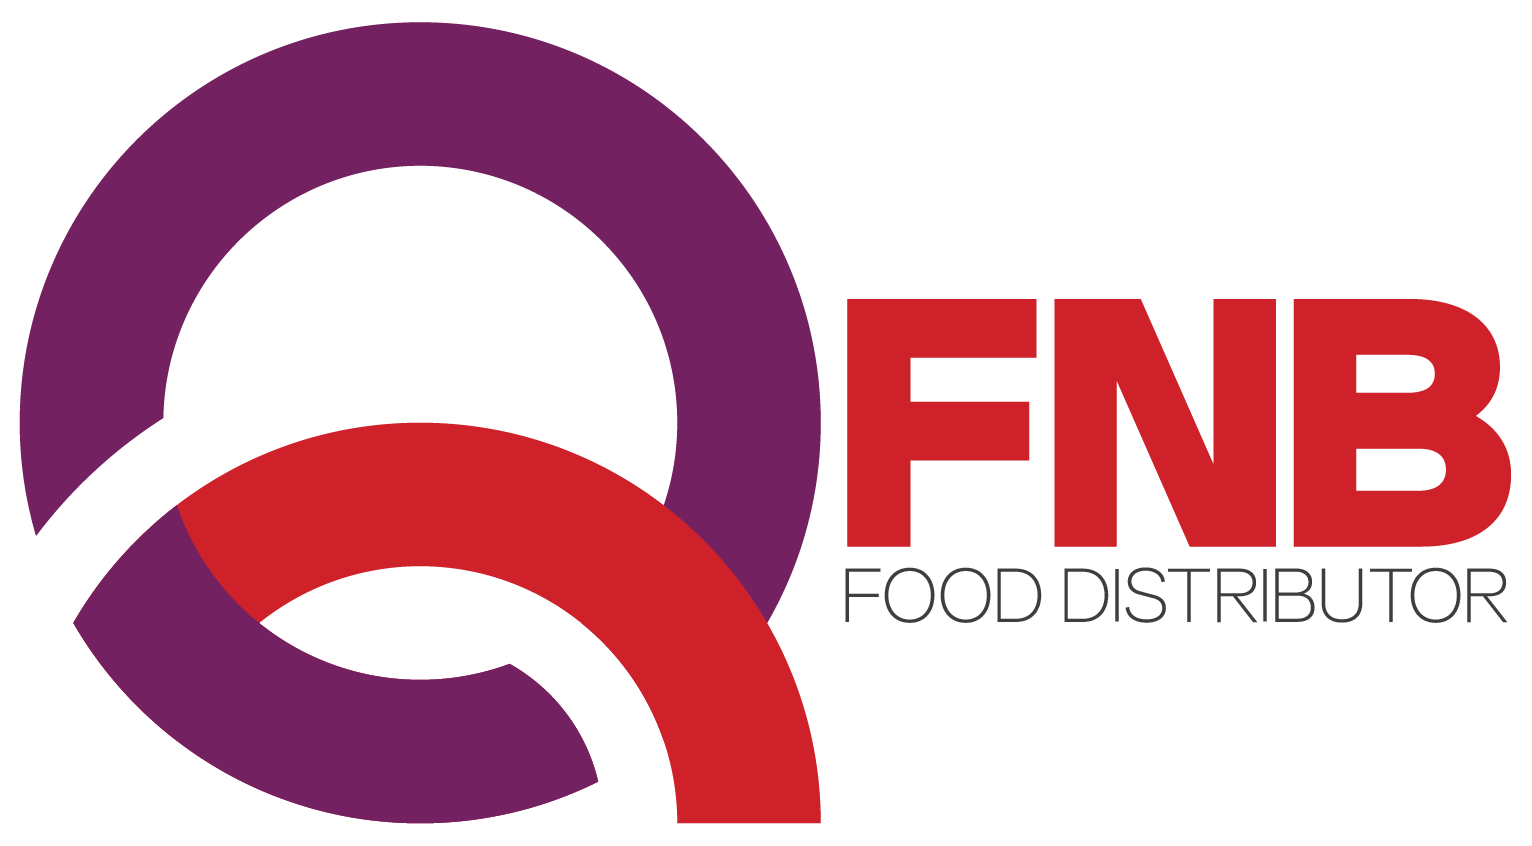 FnB Food Distributor